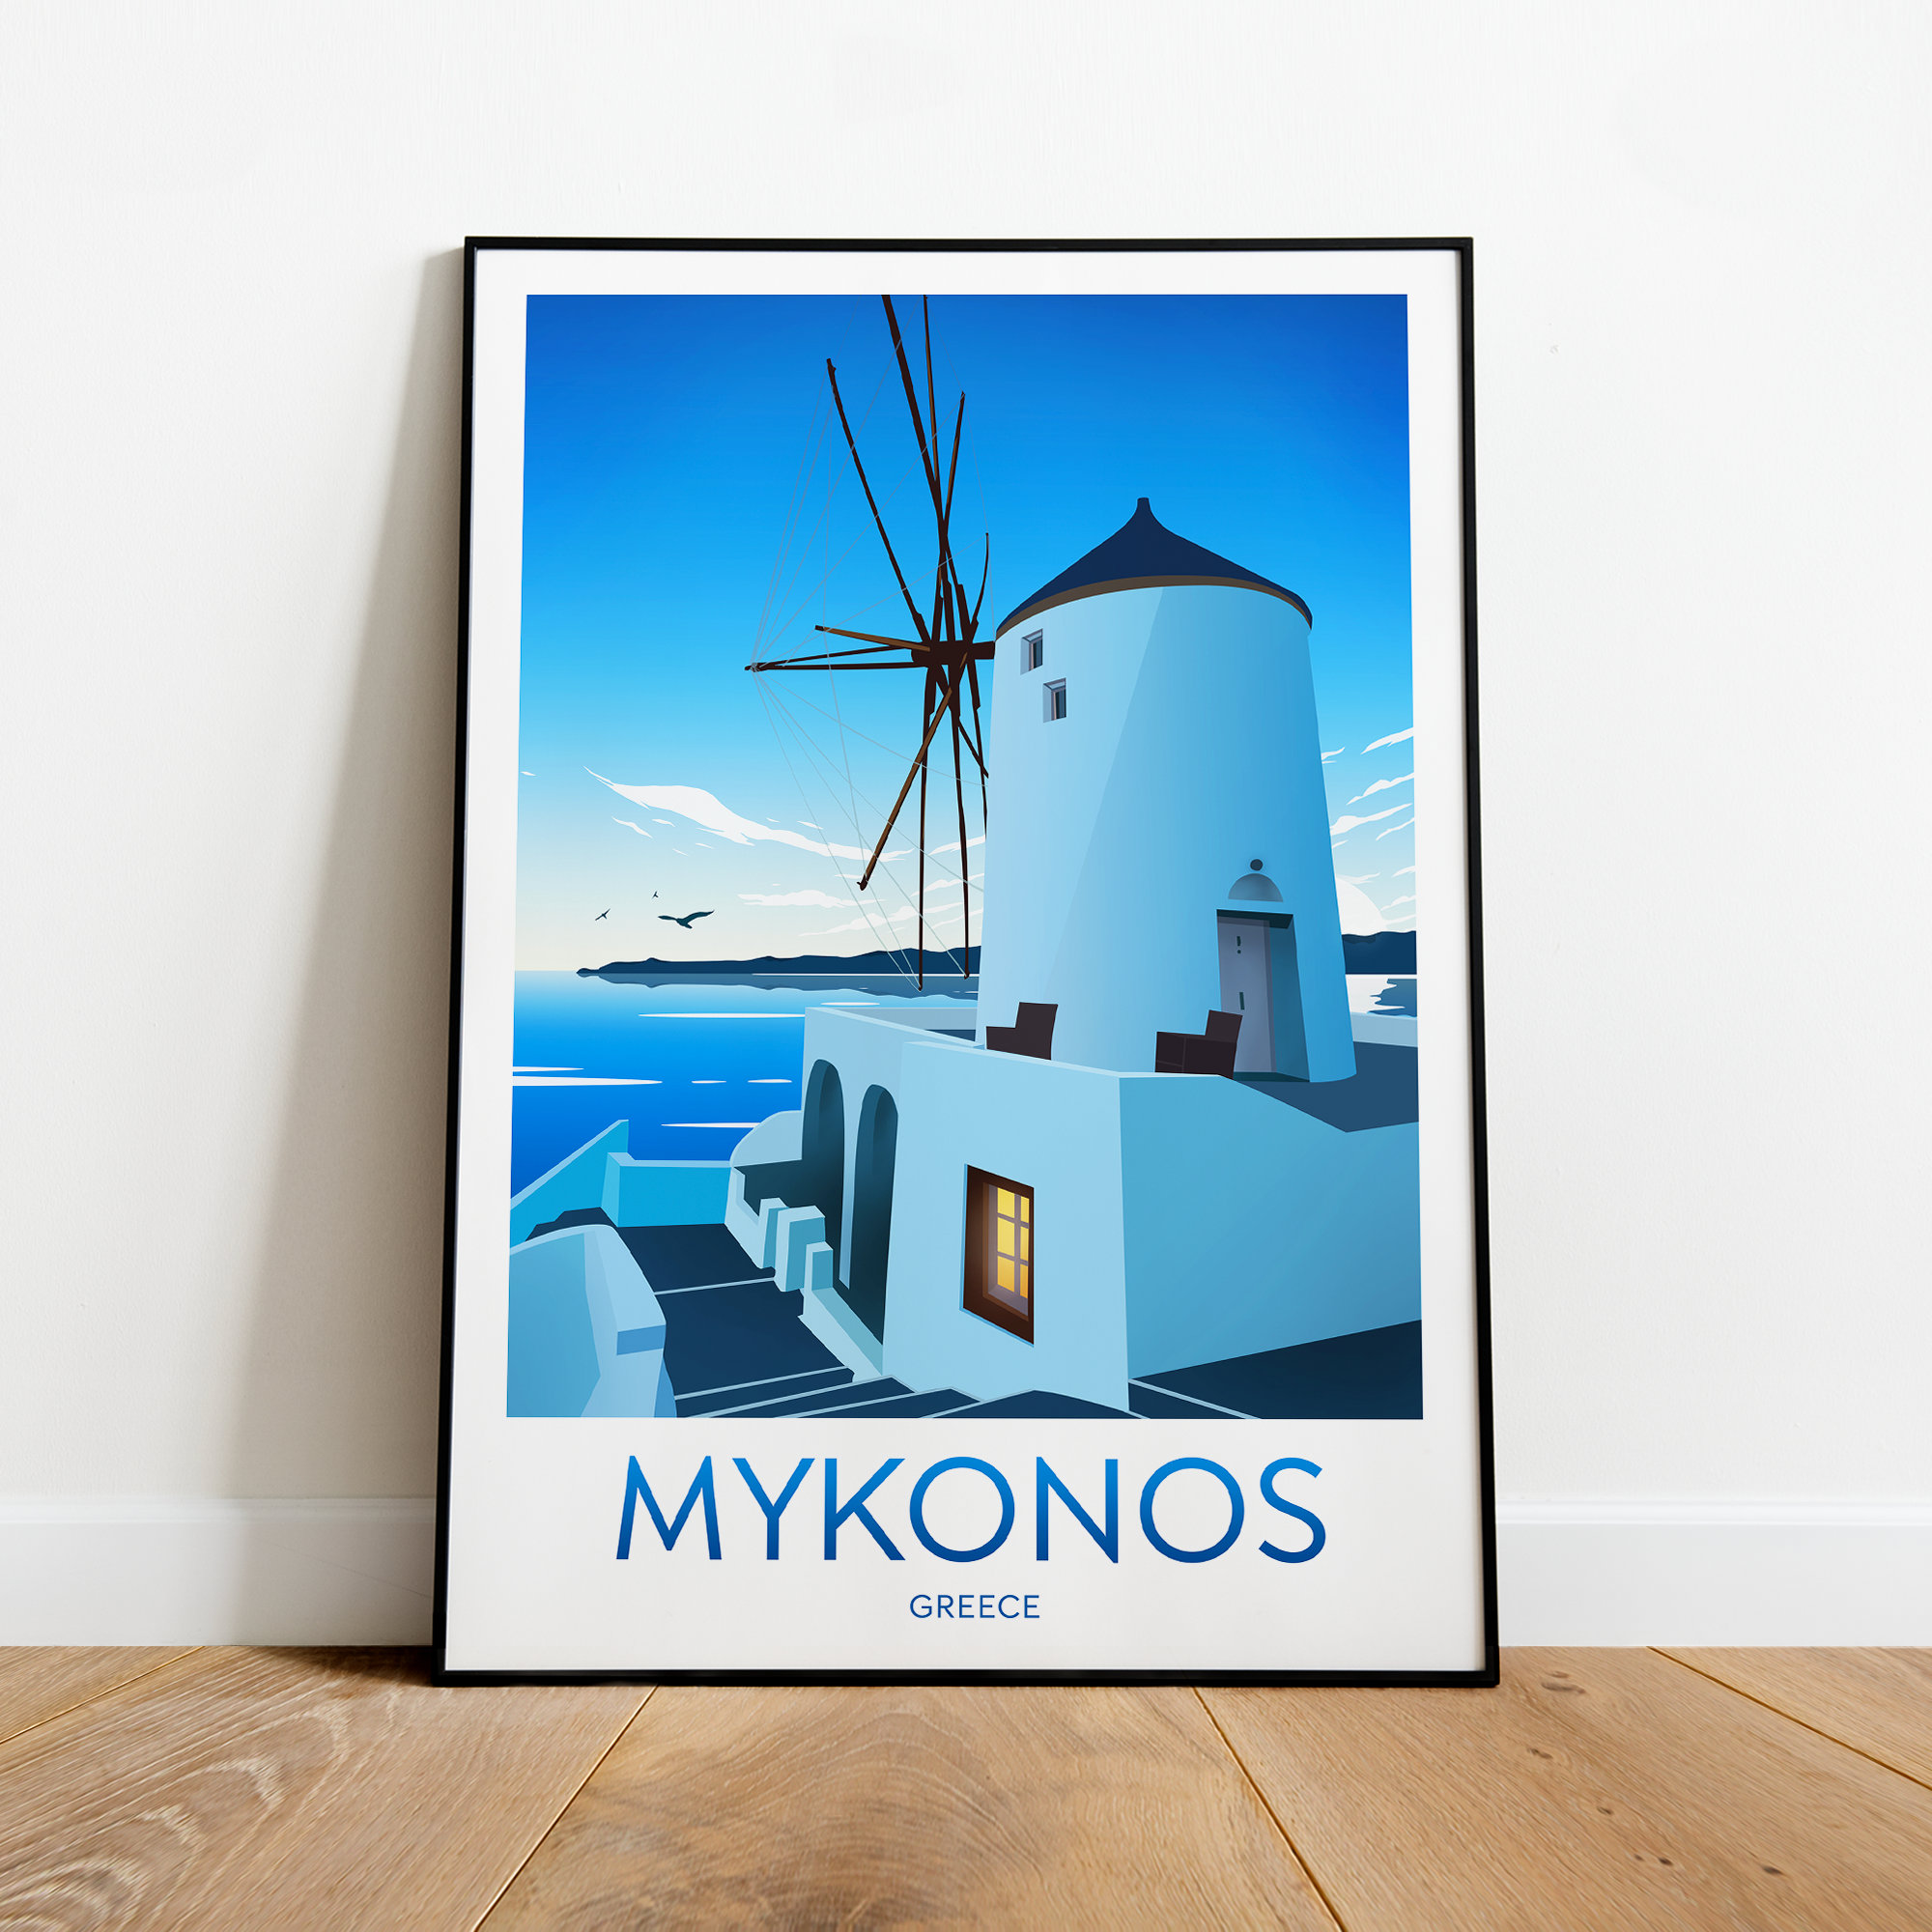  Póster de viaje vintage de Grecia Mykonos - Póster